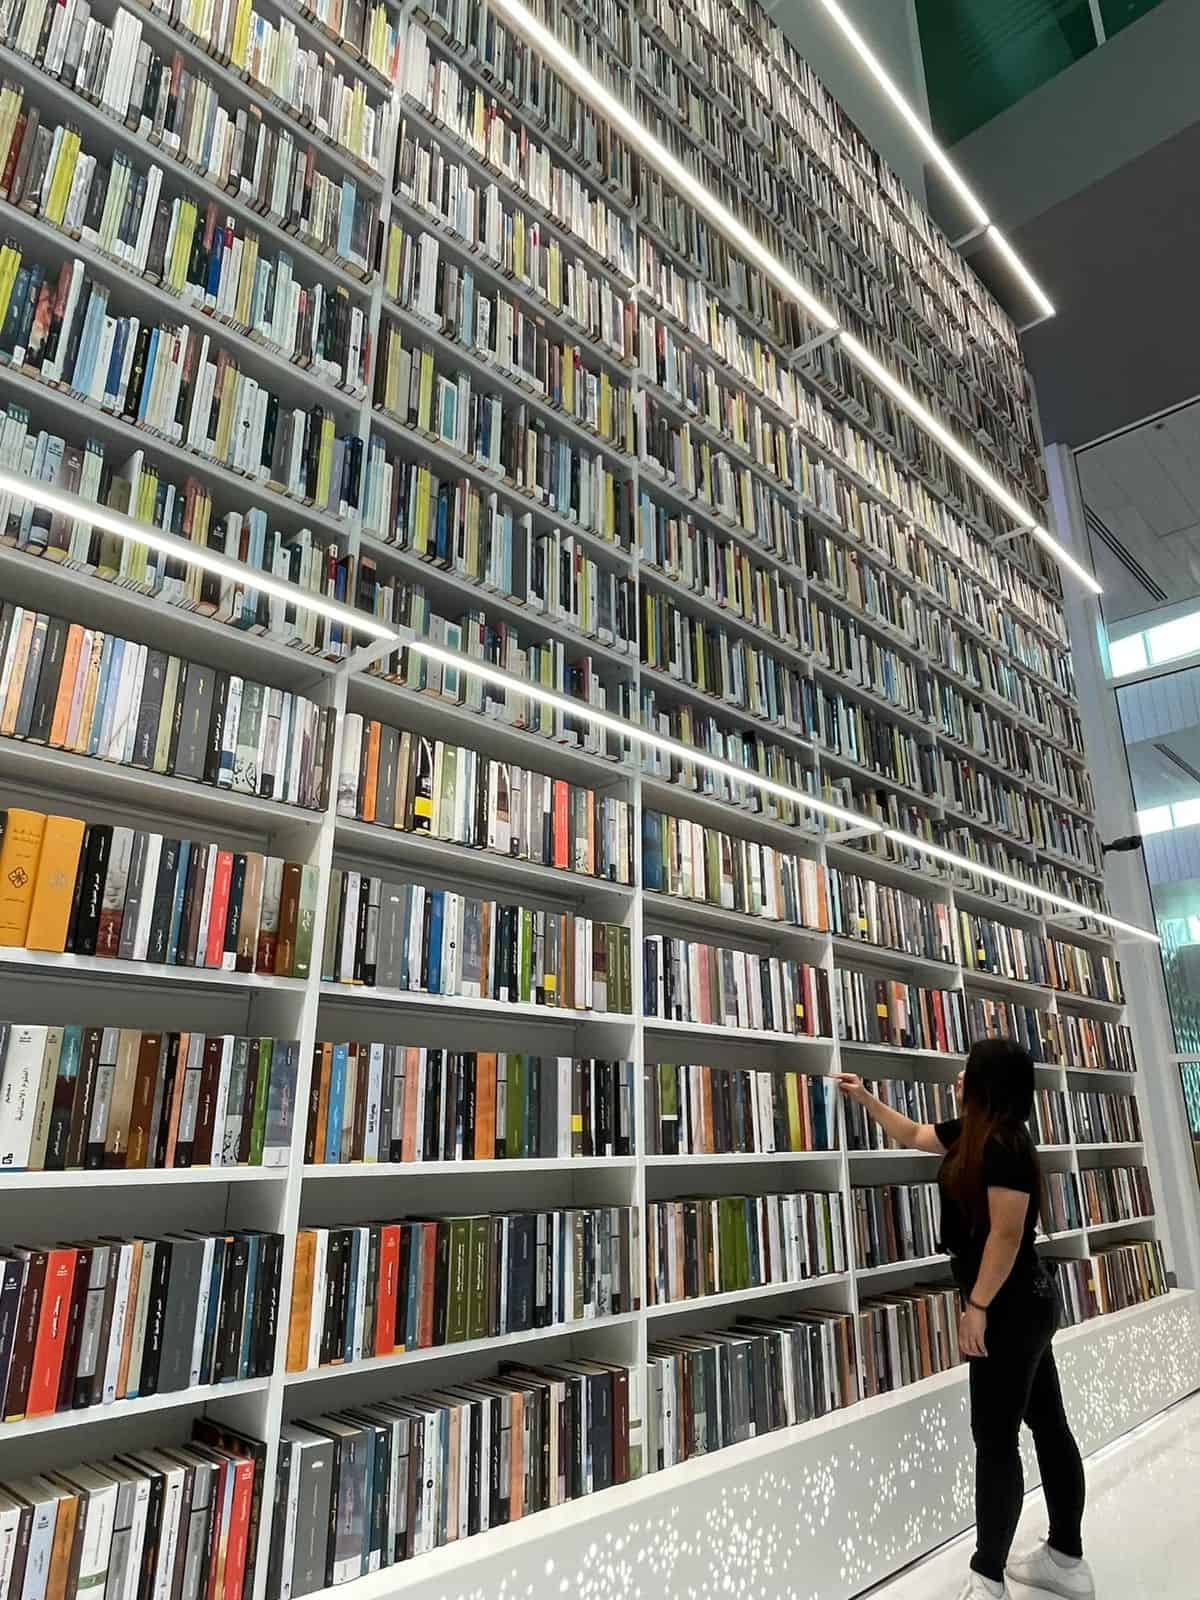 दुबई सार्वजनिक पुस्तकालयहरूले गर्मीको समयमा अद्वितीय ज्ञान र सांस्कृतिक अनुभवहरू प्रदान गर्दछ